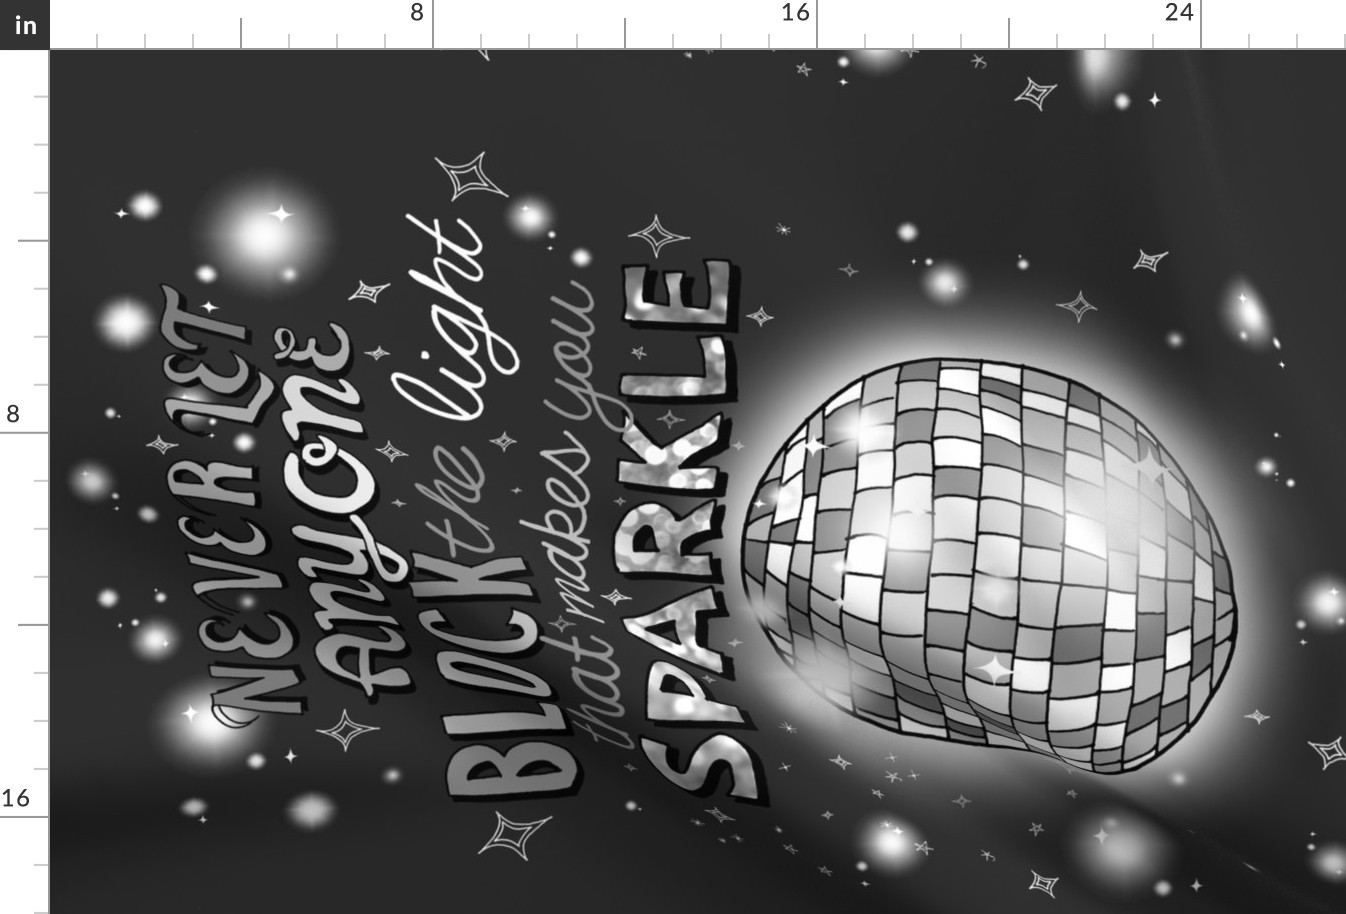 Sparkle! (Silver Disco Ball) 